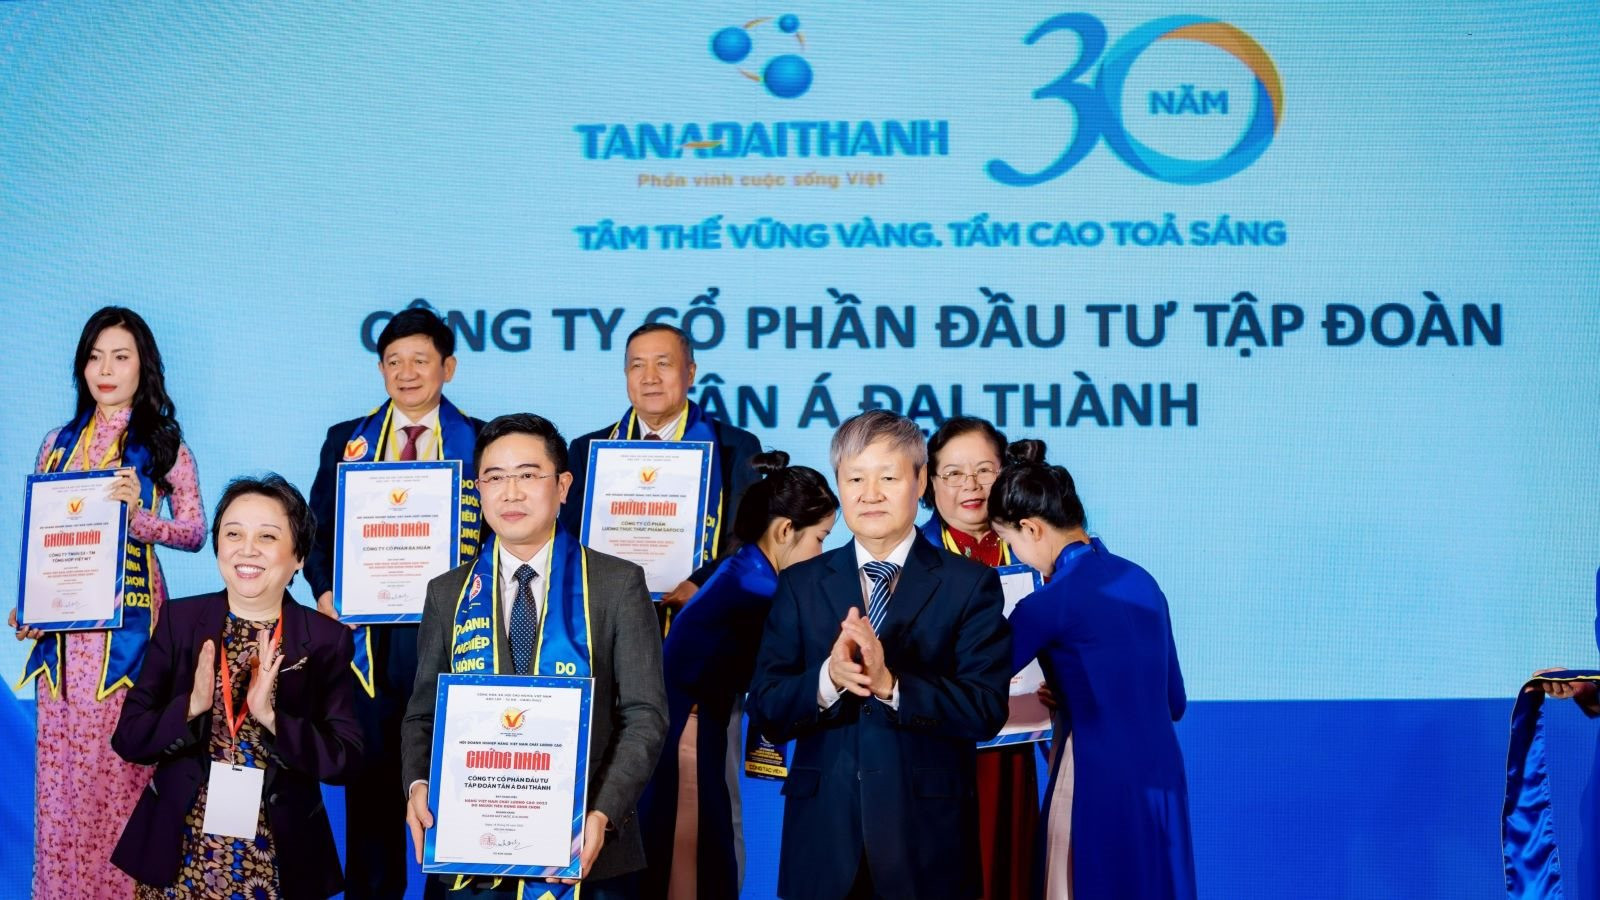 Tân Á Đại Thành: Gần 20 năm liên tục được tôn vinh “ Hàng Việt Nam chất lượng cao”